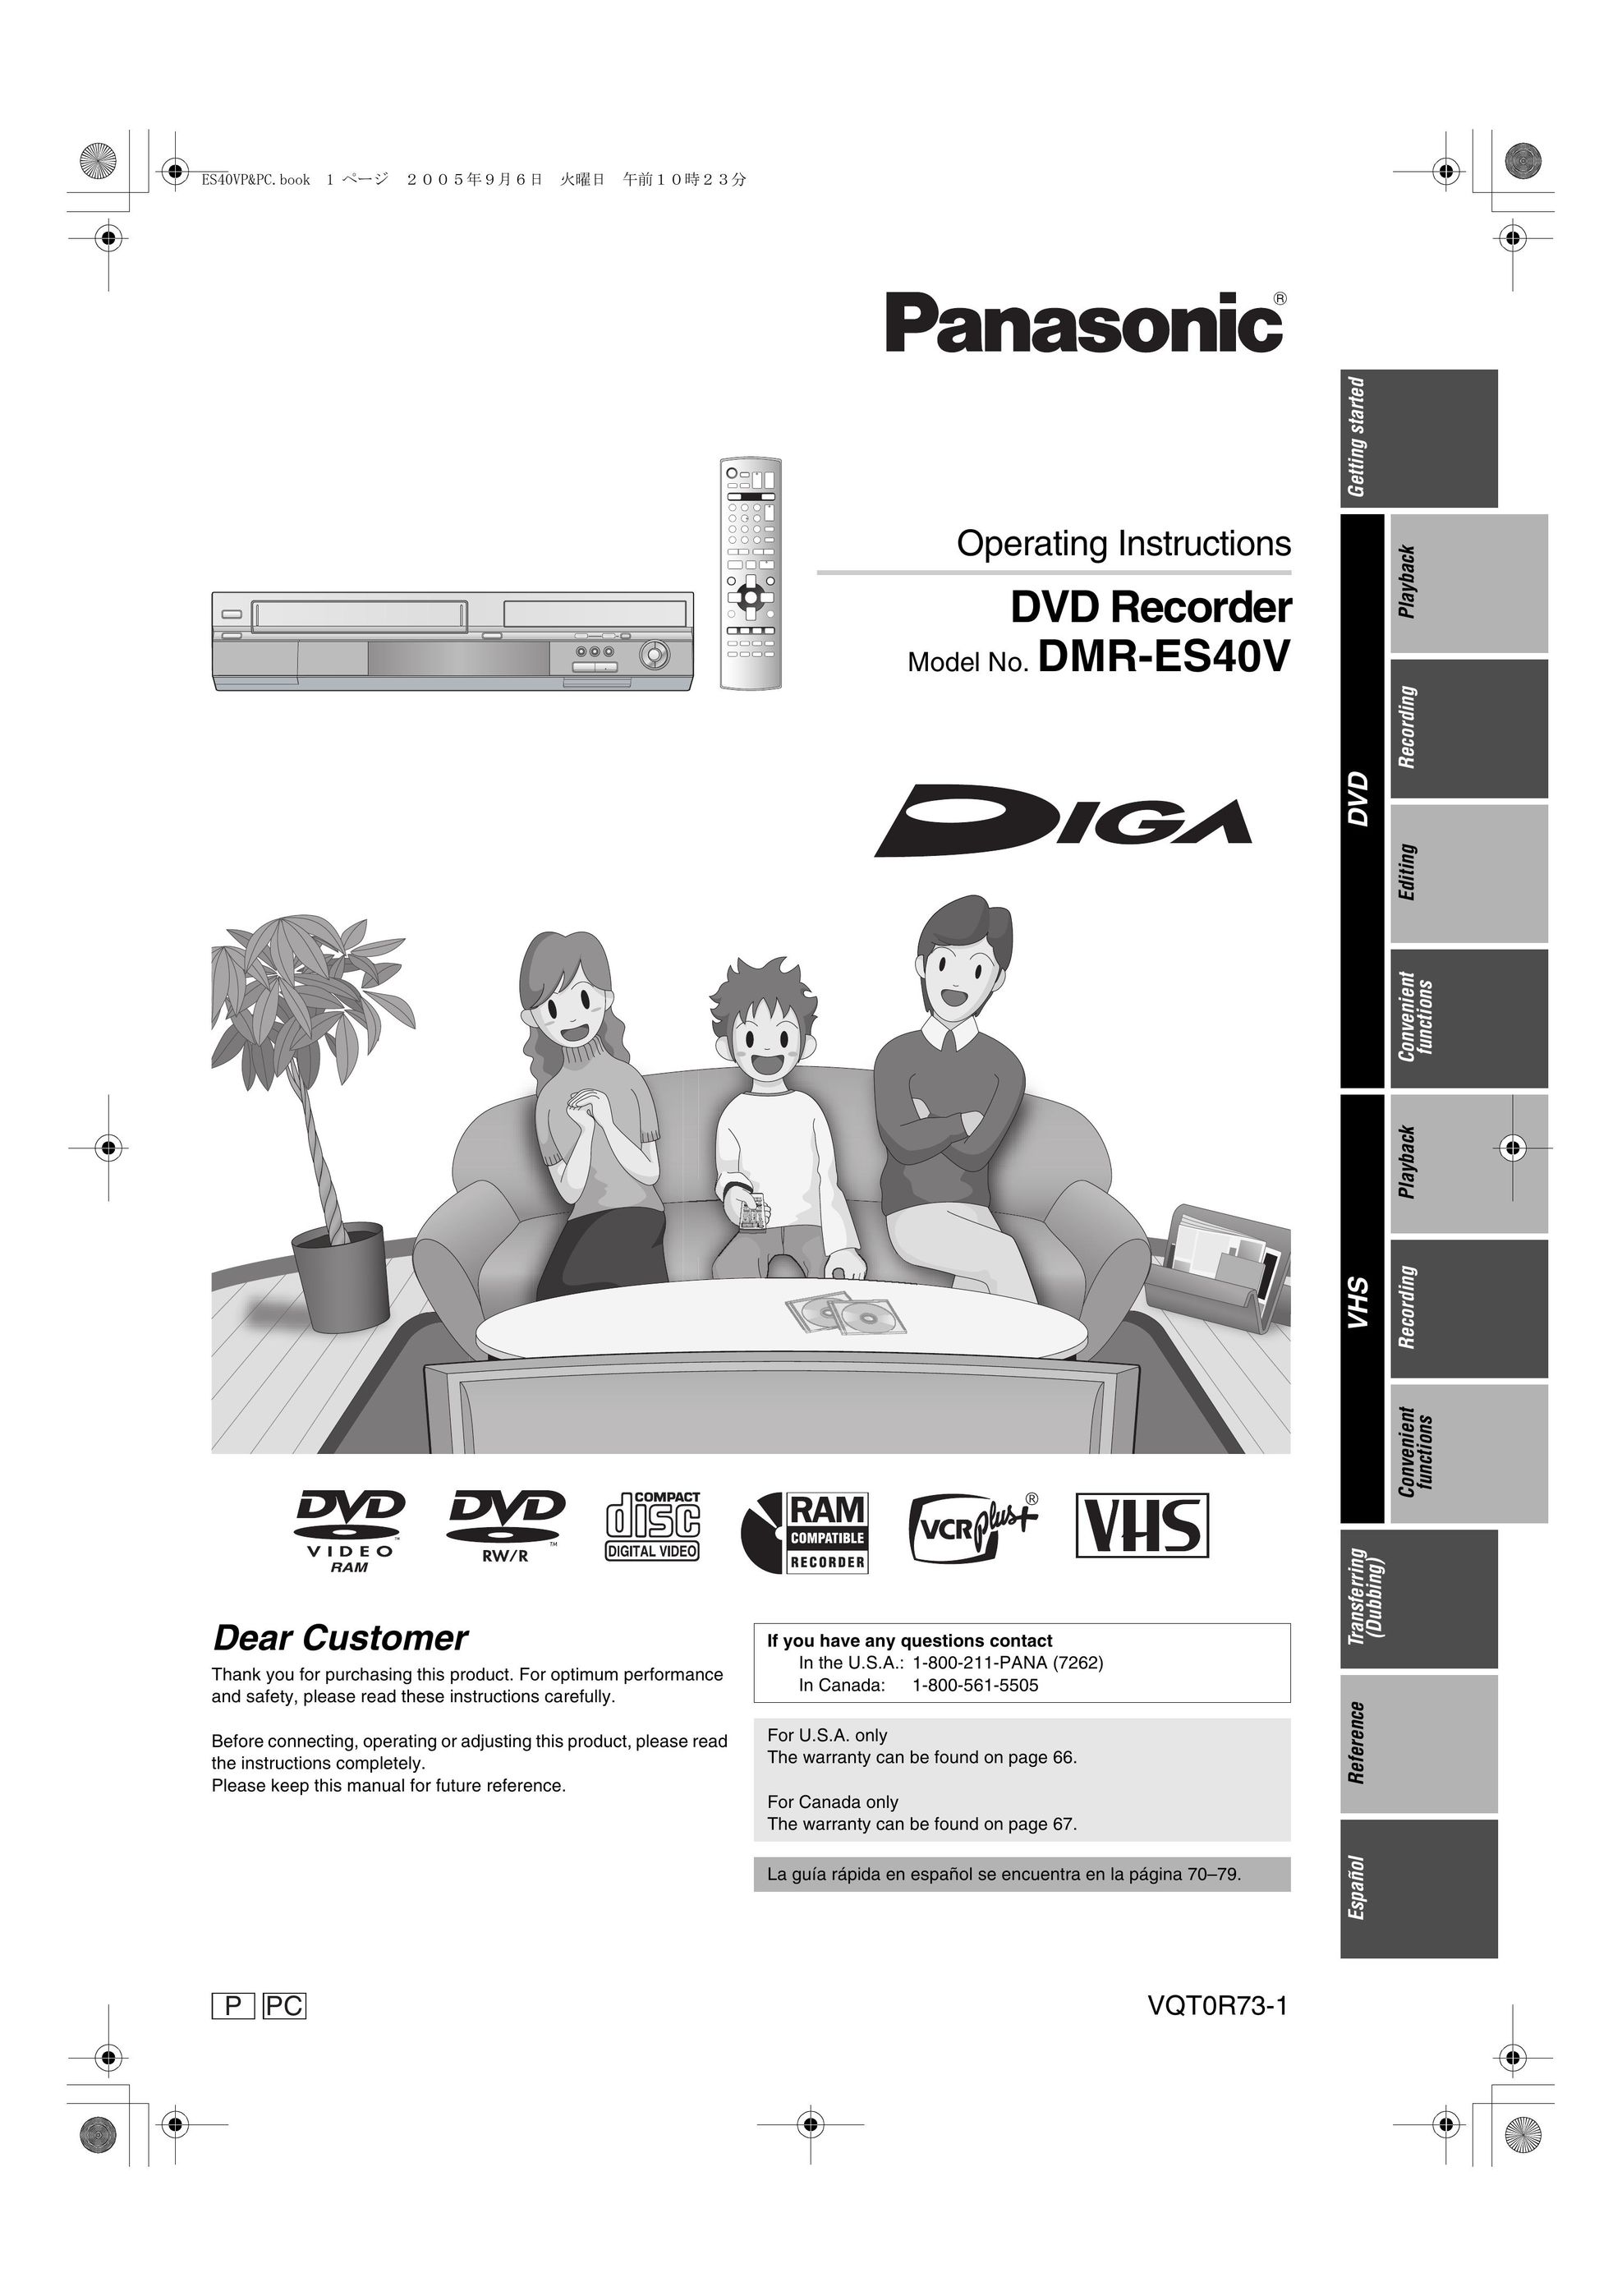 Panasonic DMR-ES40V DVD Recorder User Manual